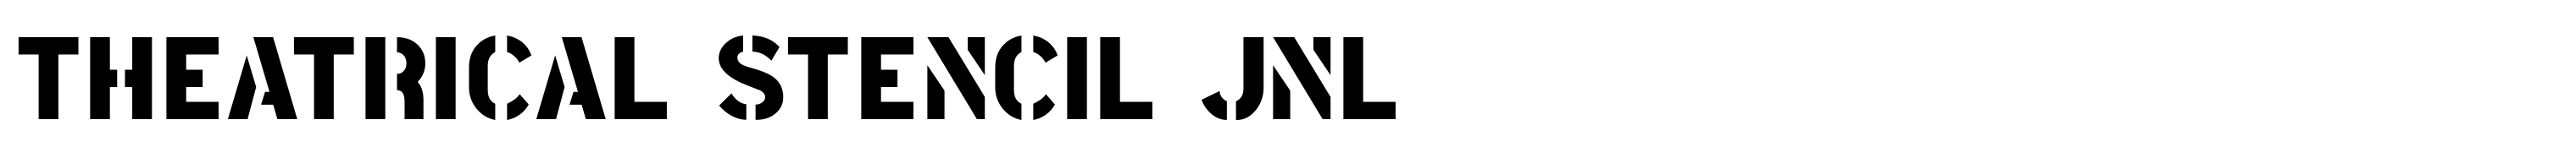 Theatrical Stencil JNL